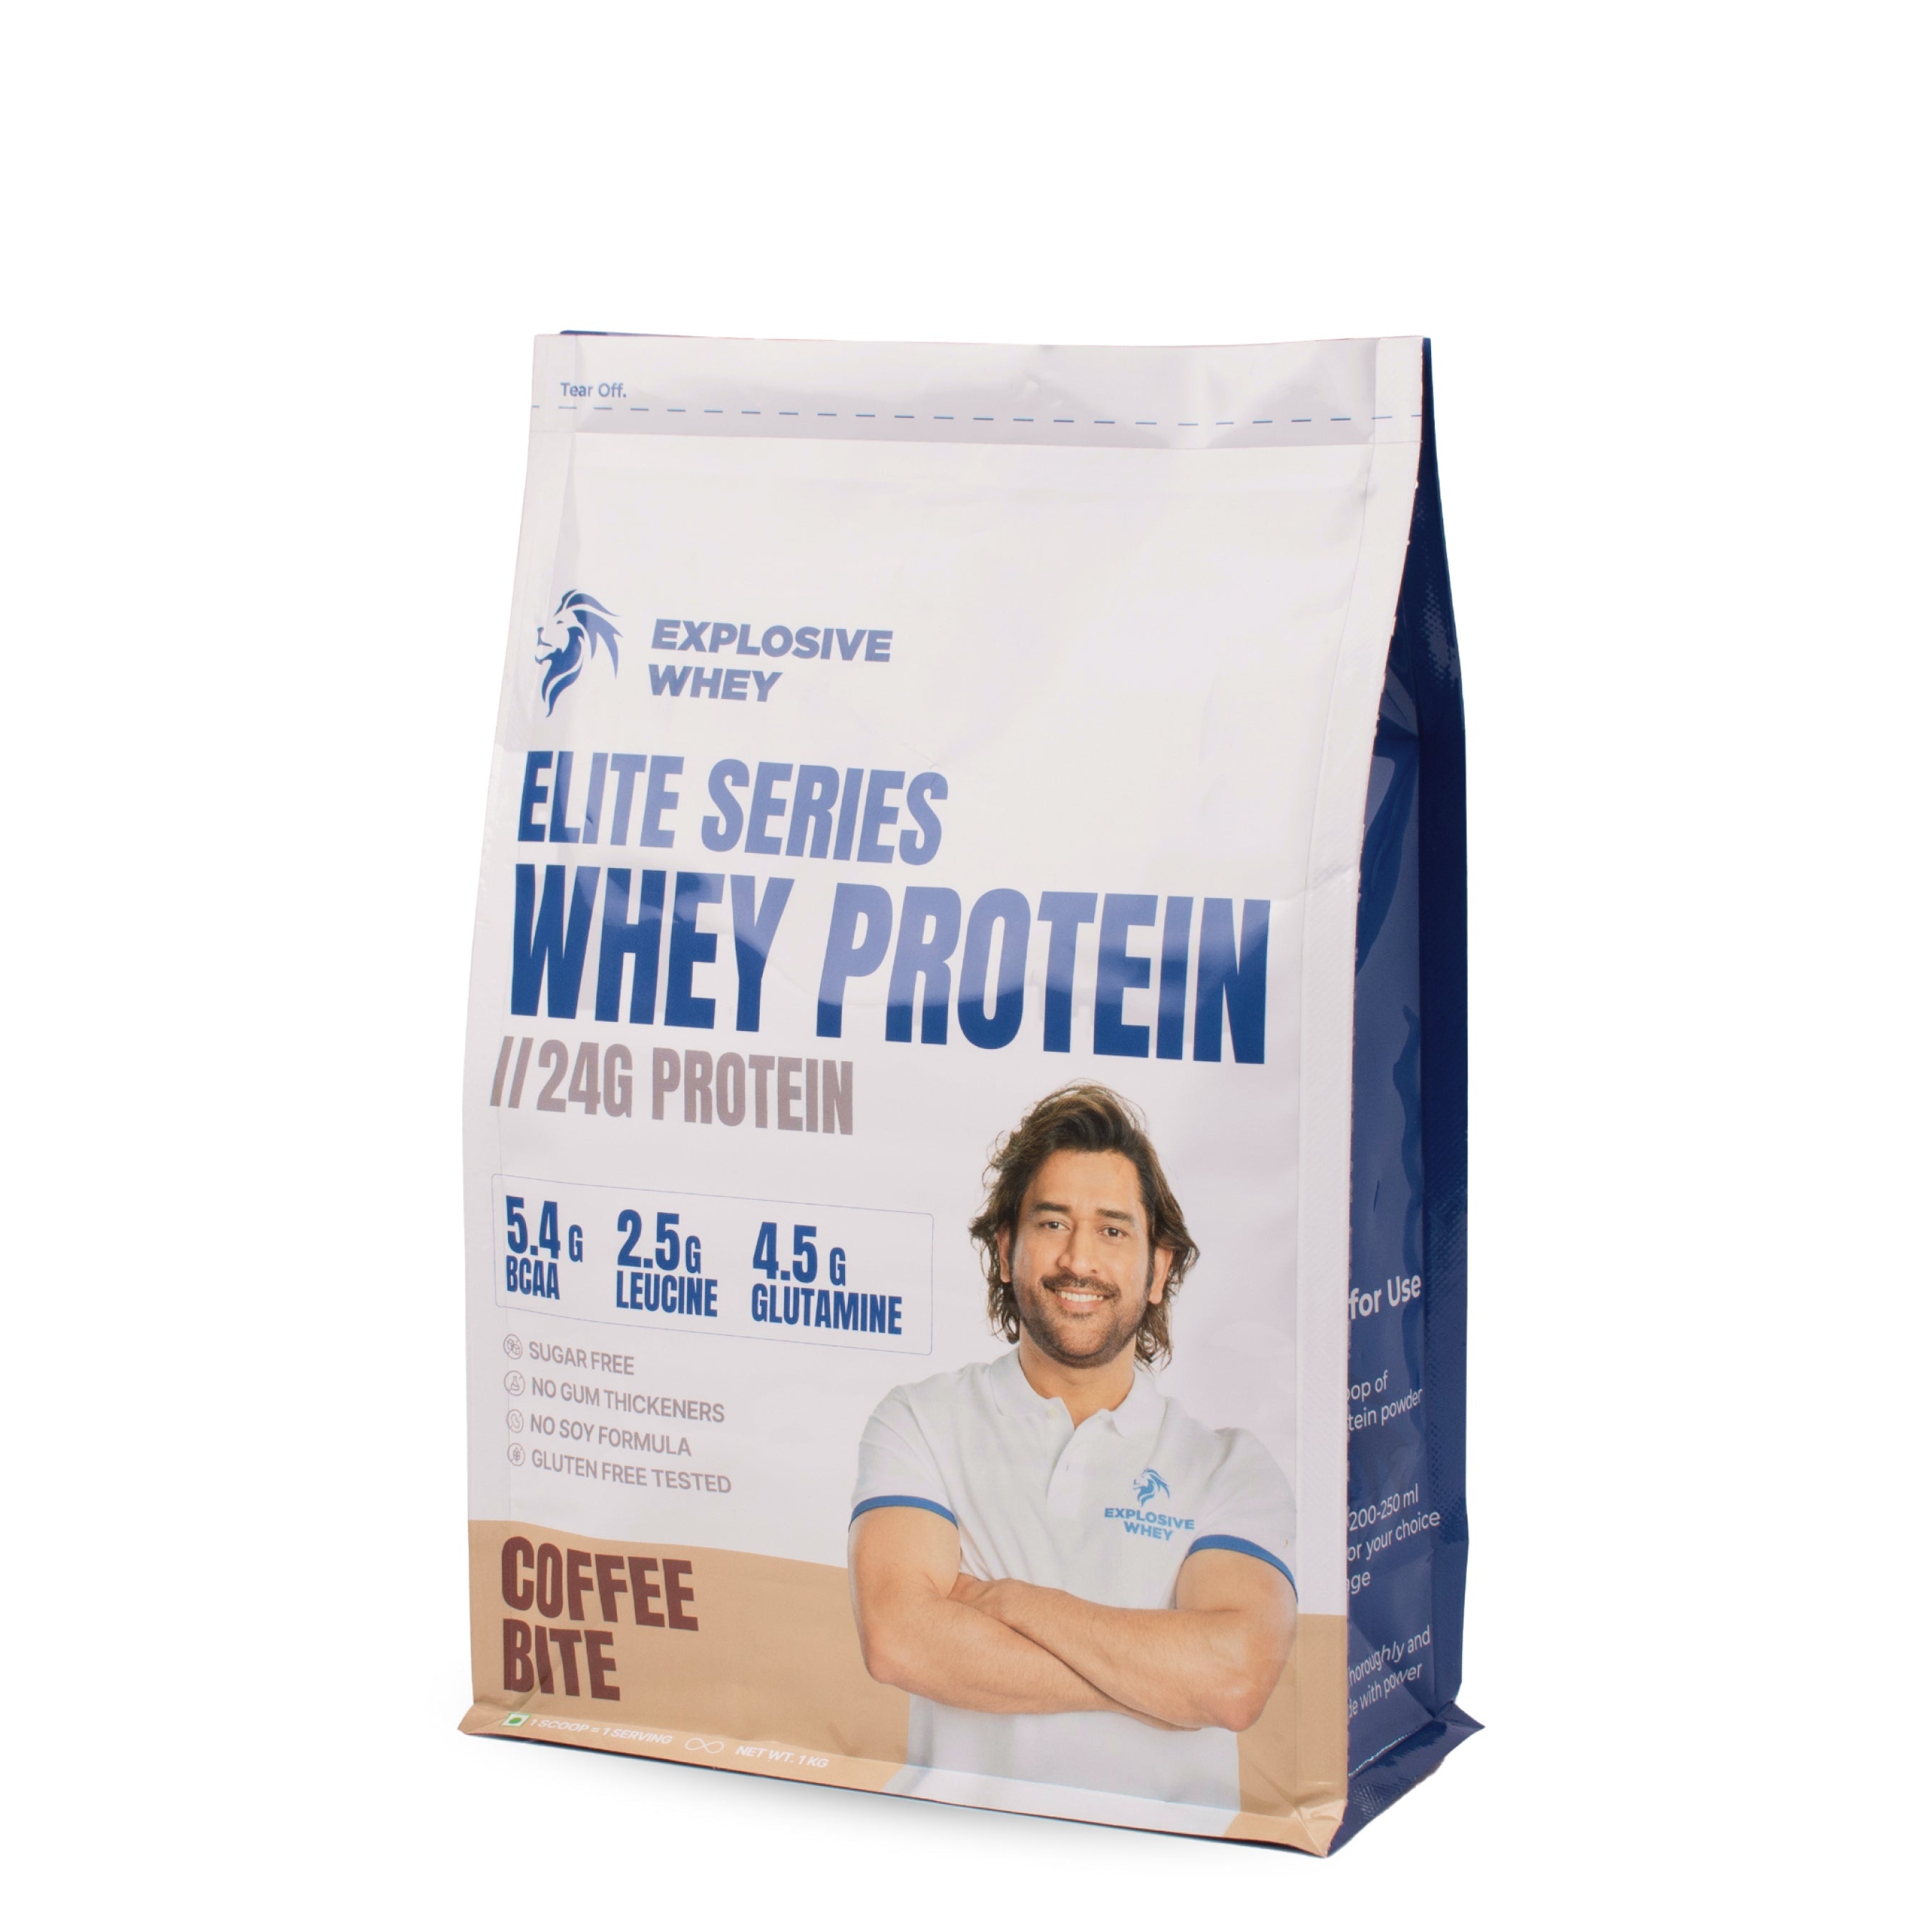 Elite Series Whey Protein - Explosive Whey